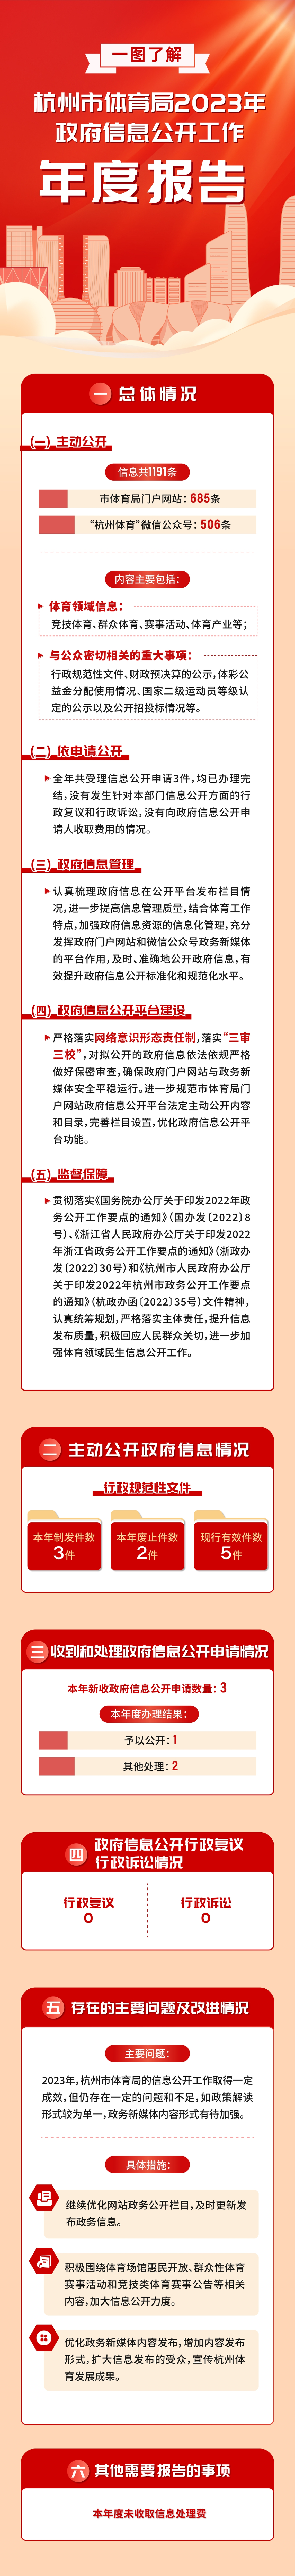 杭州市体育局2023年政府信息公开工作年度报告.jpg